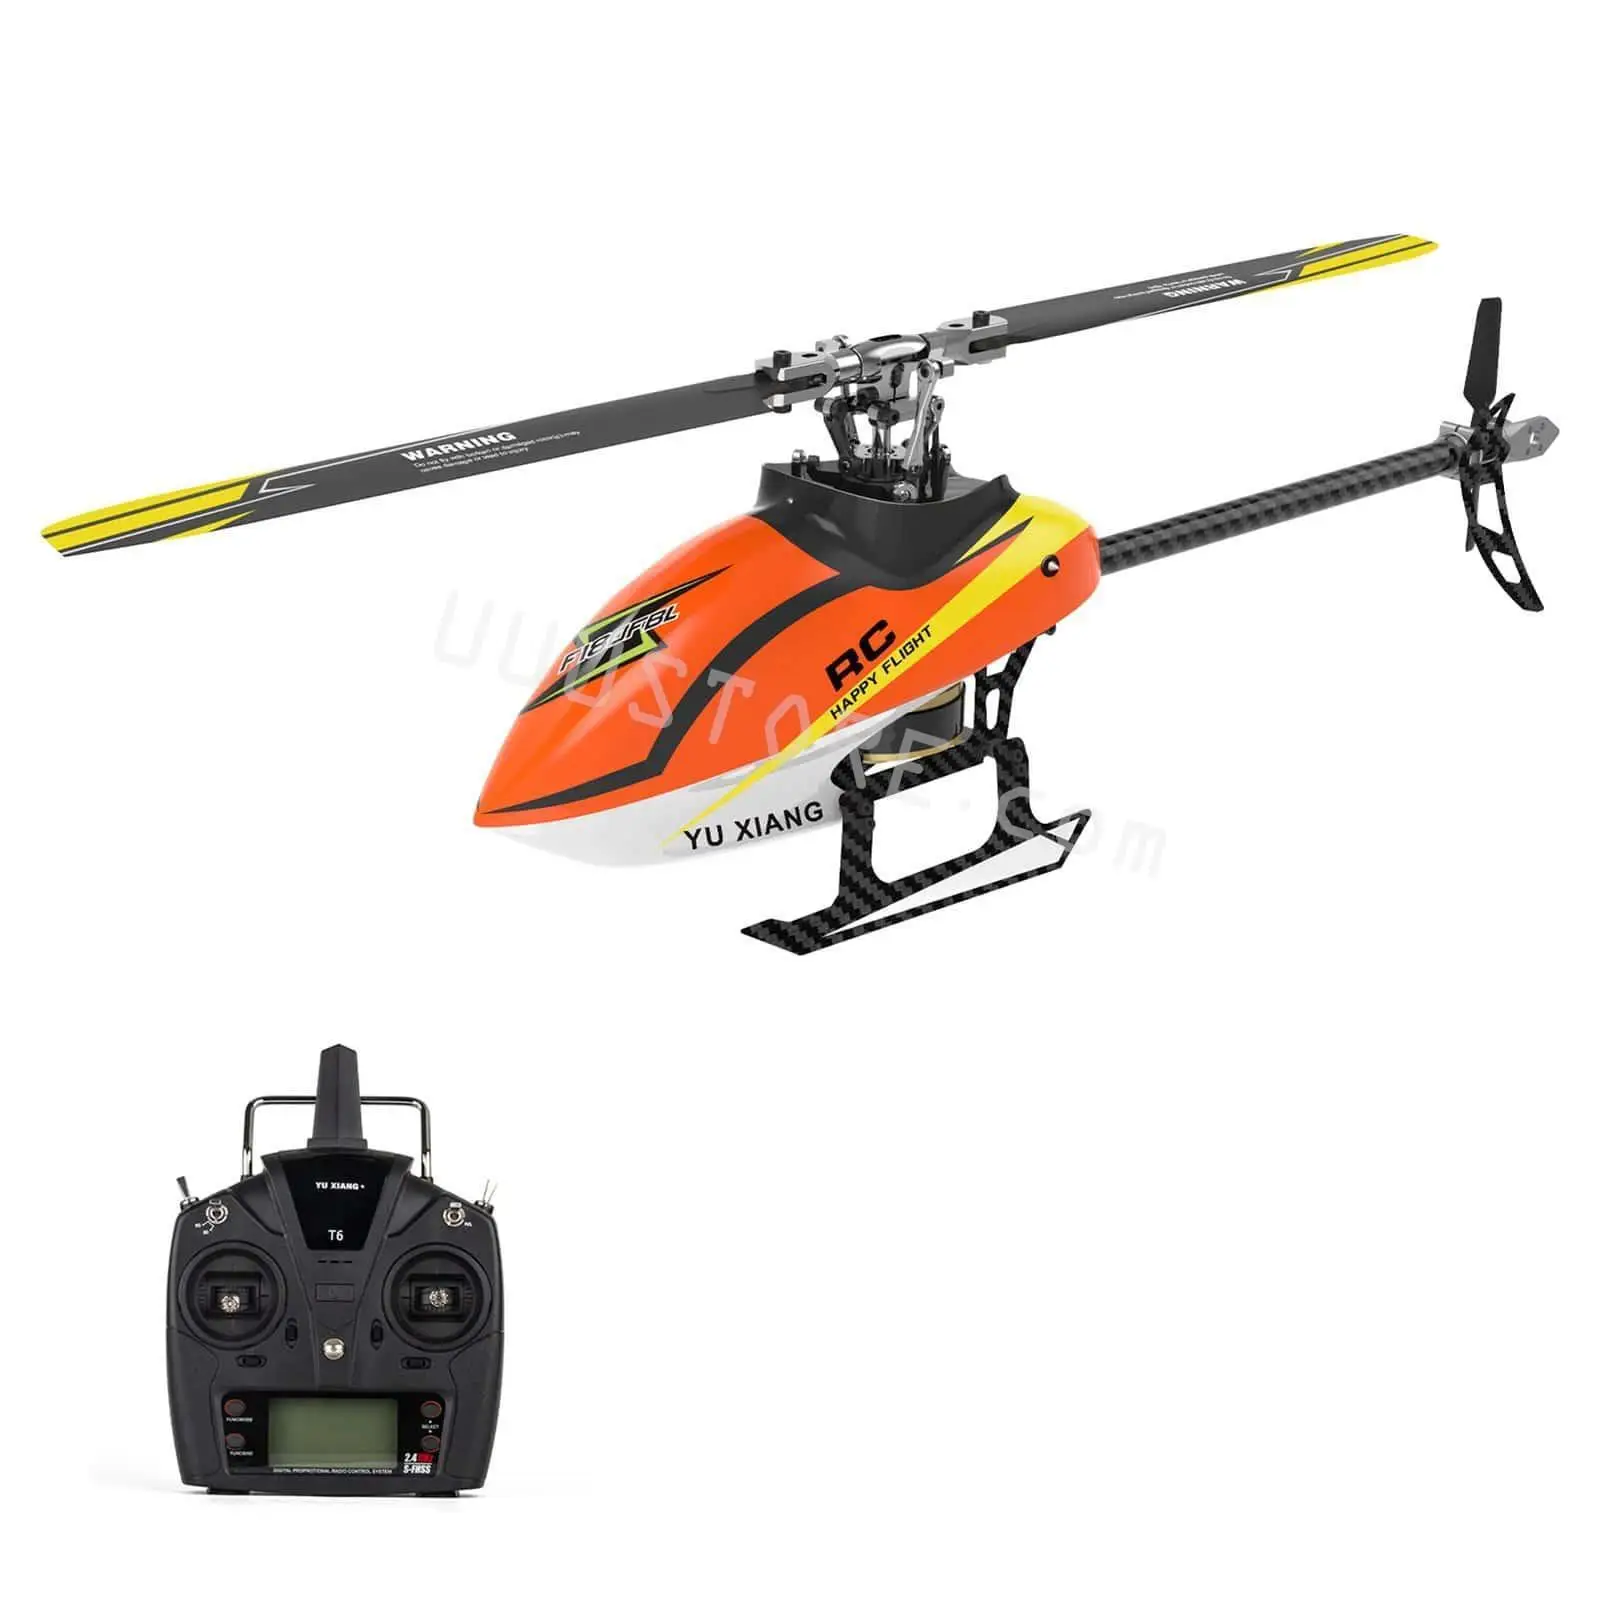 

YU XIANG F180 Радиоуправляемый вертолет 2,4 ГГц 6CH Flybarless 3D/6G трюковый вертолет RTF двойной бесщеточный двигатель Радиоуправляемый вертолет подарок ...